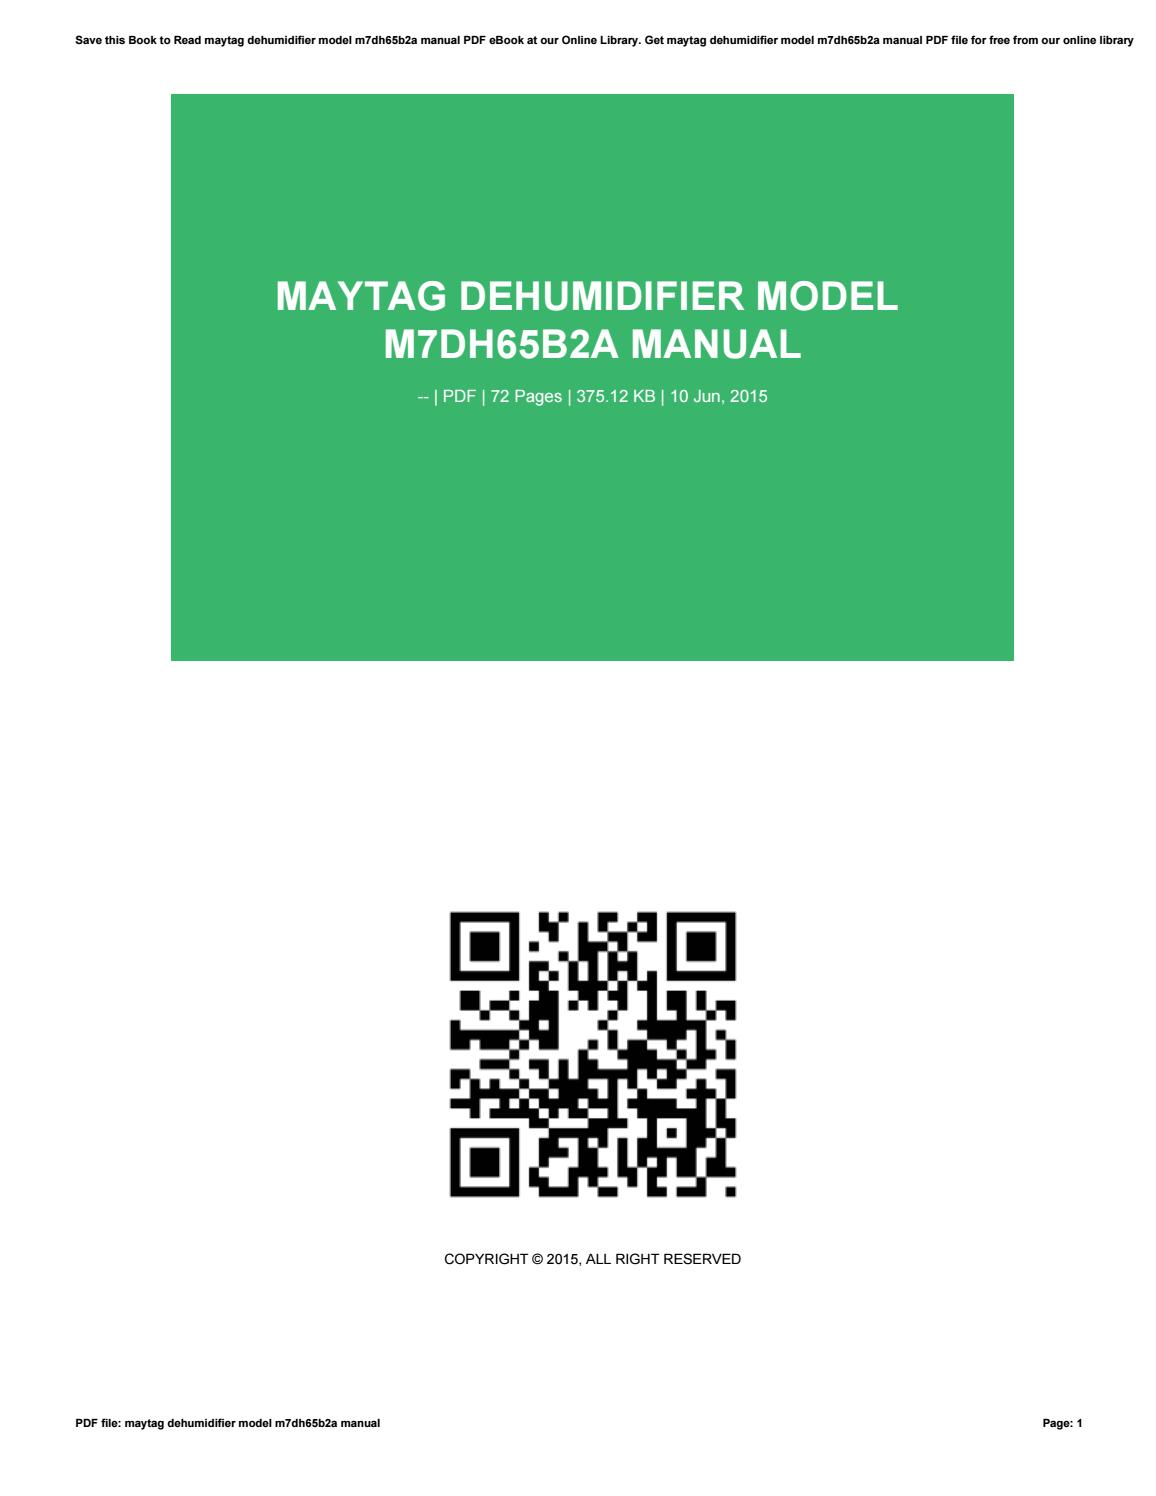 Maytag Dehumidifier M7dh65b2a Manual